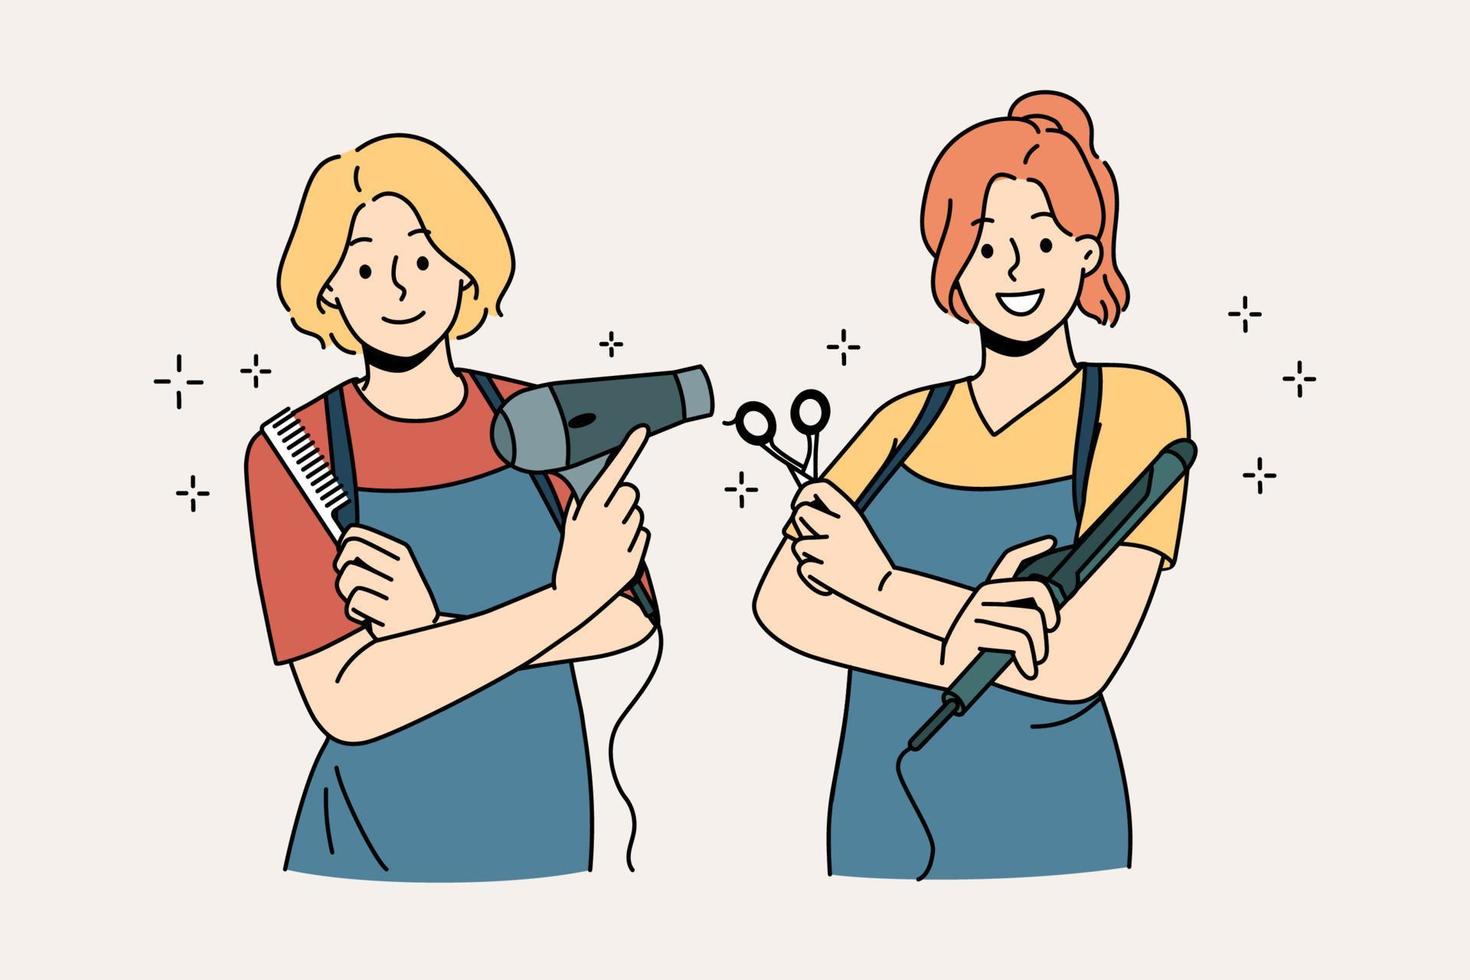 arbetssätt som frisör i salong begrepp. två ung leende flickor bär förkläden stående innehav arbetssätt verktyg i frisering salong vektor illustration